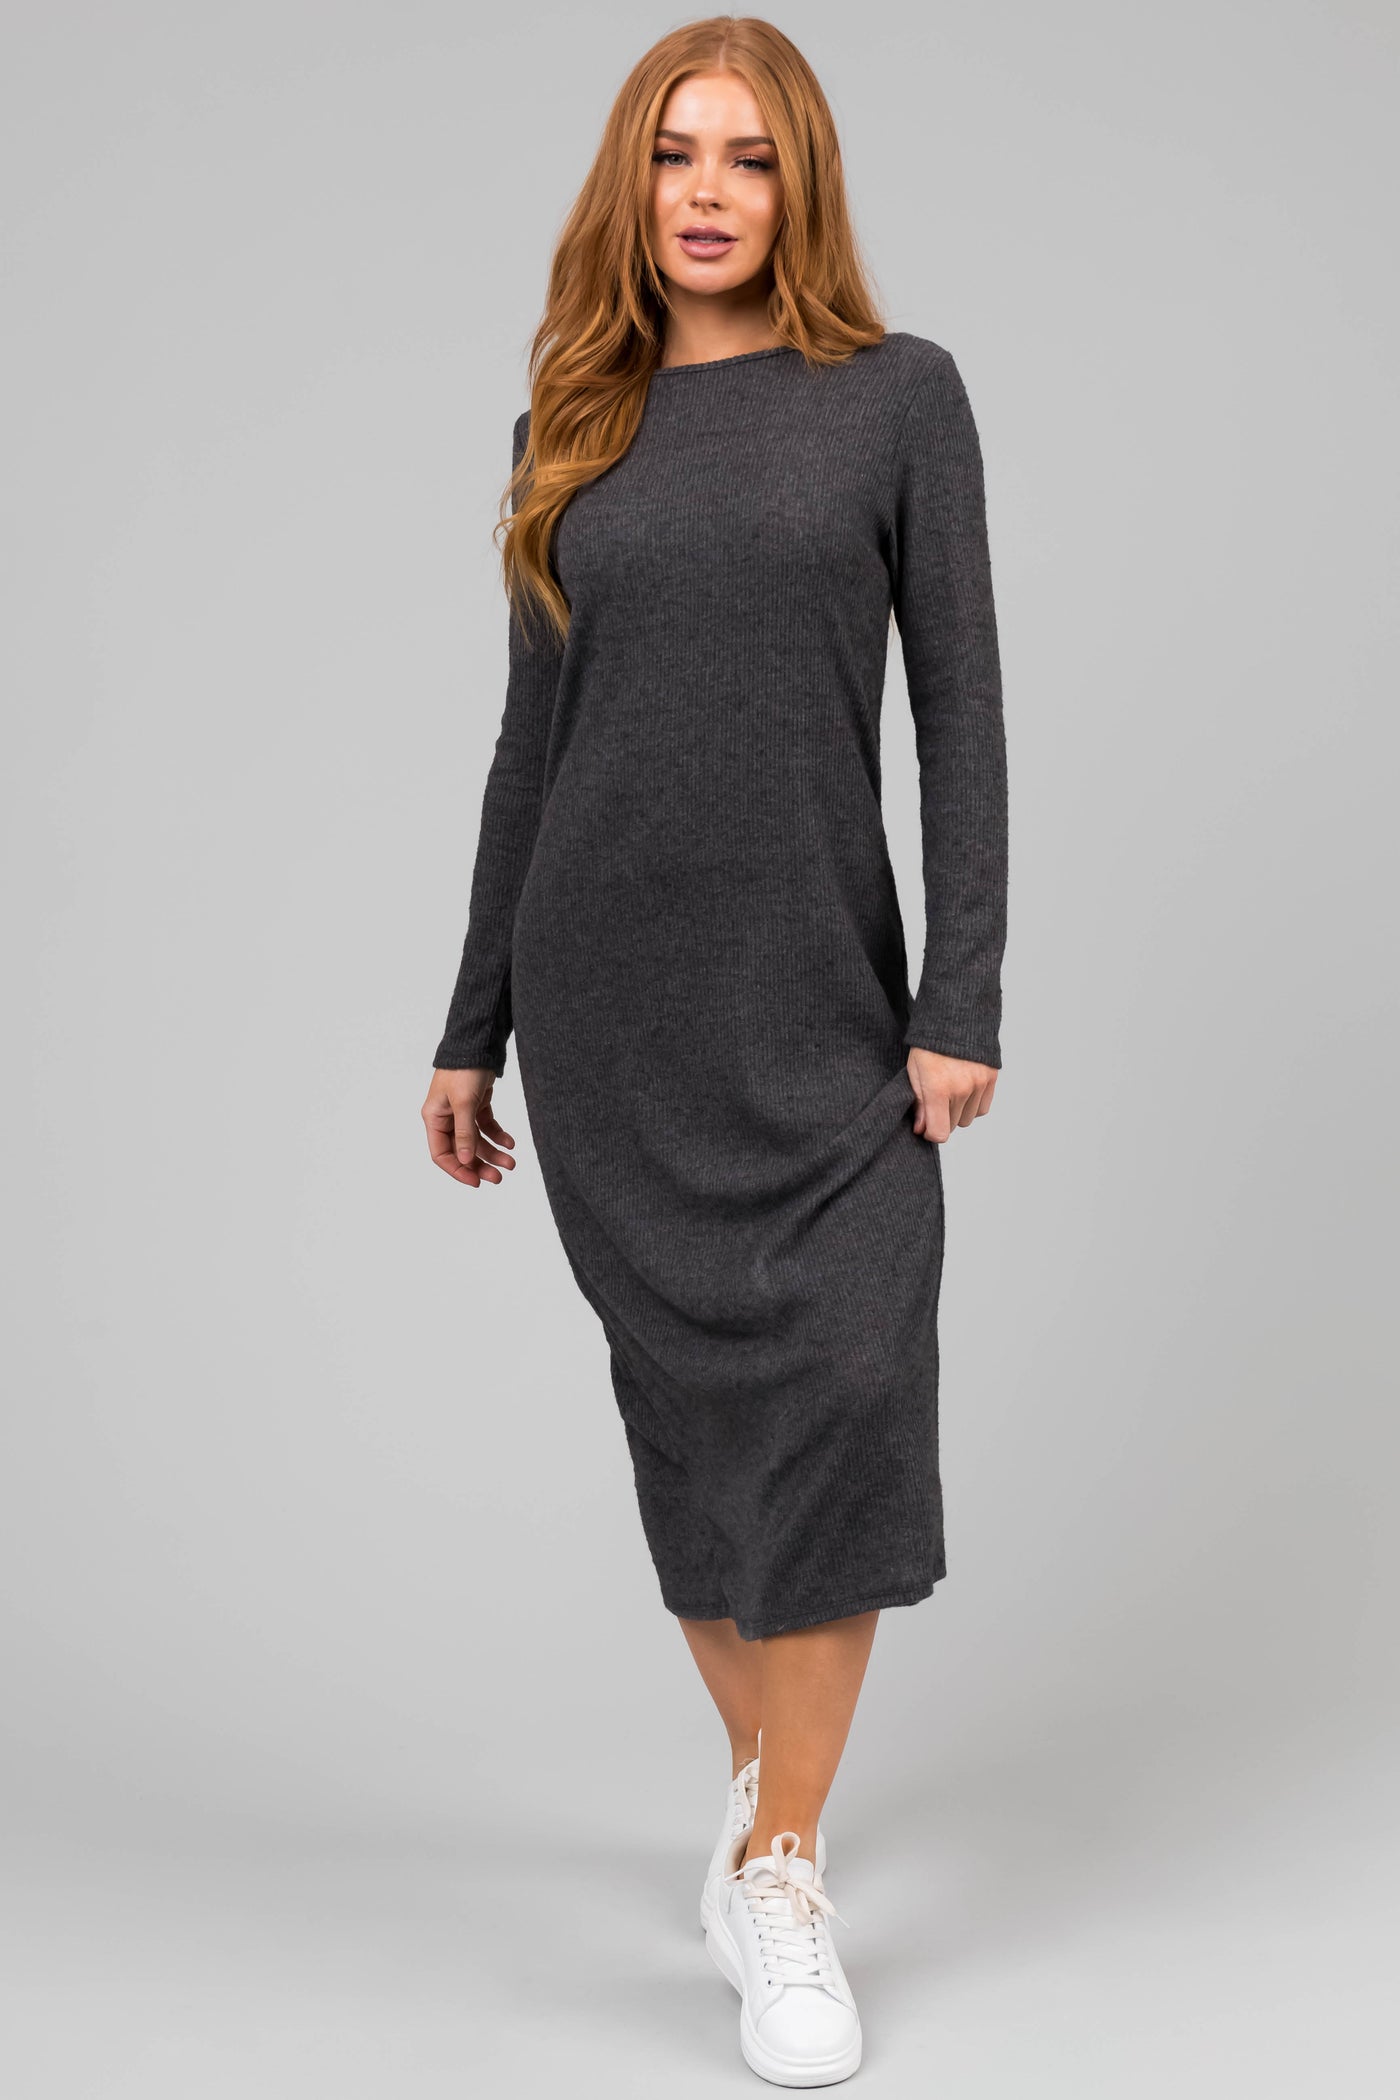 Charcoal Lightweight Knit Long Sleeve Maxi Dress